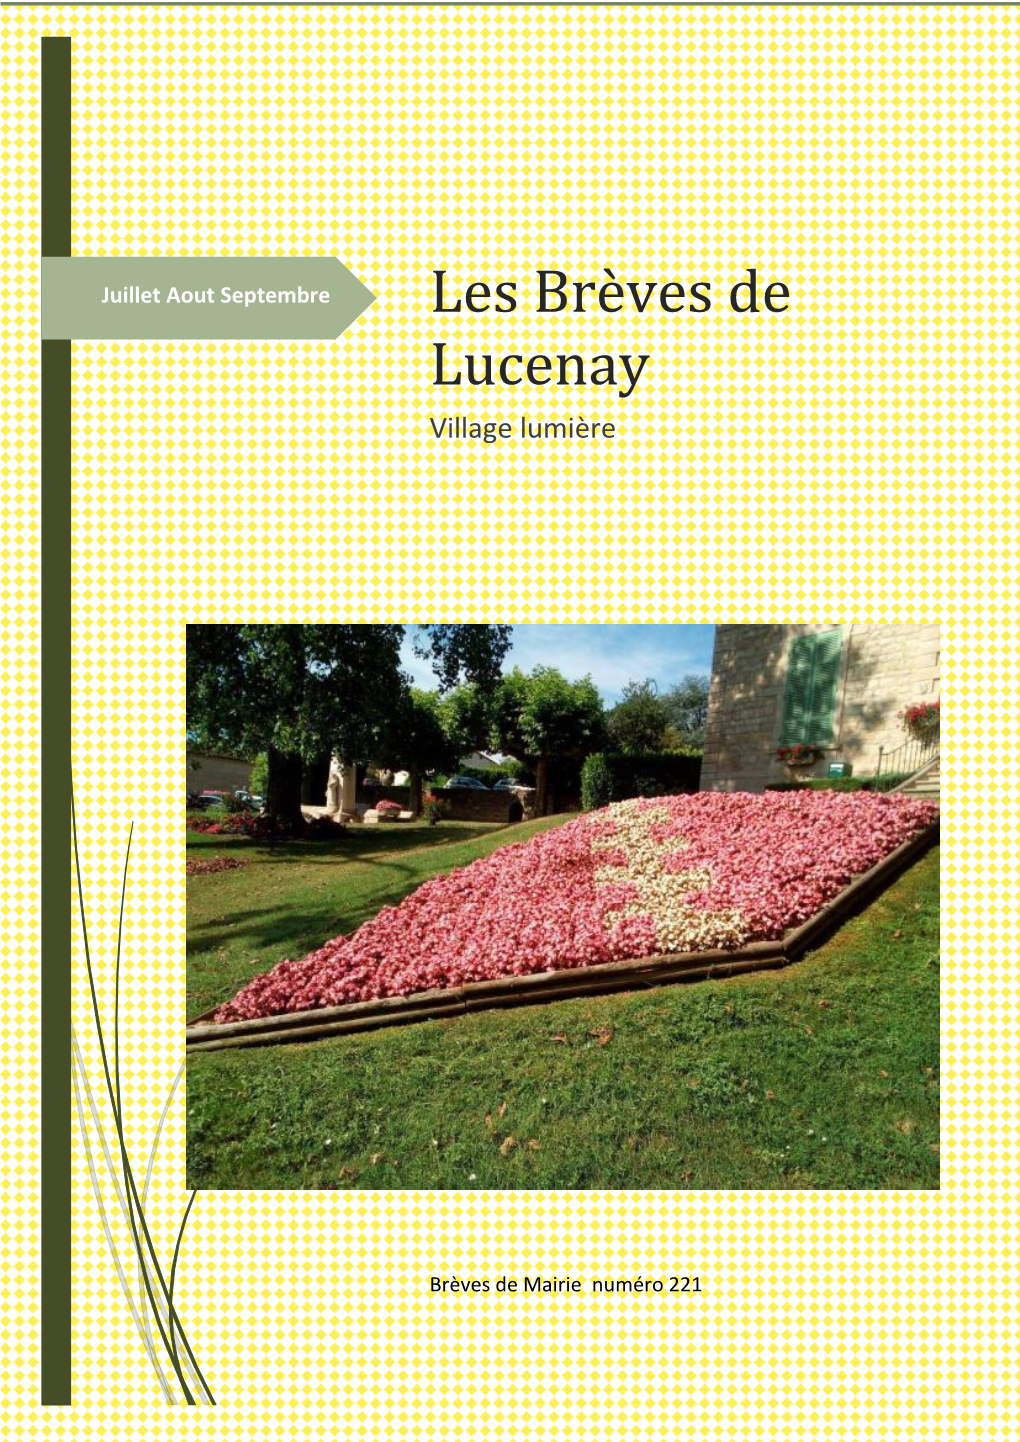 Les Brèves De LUCENAY) Sont Publiées Par Madame Le Maire Valérie Communication